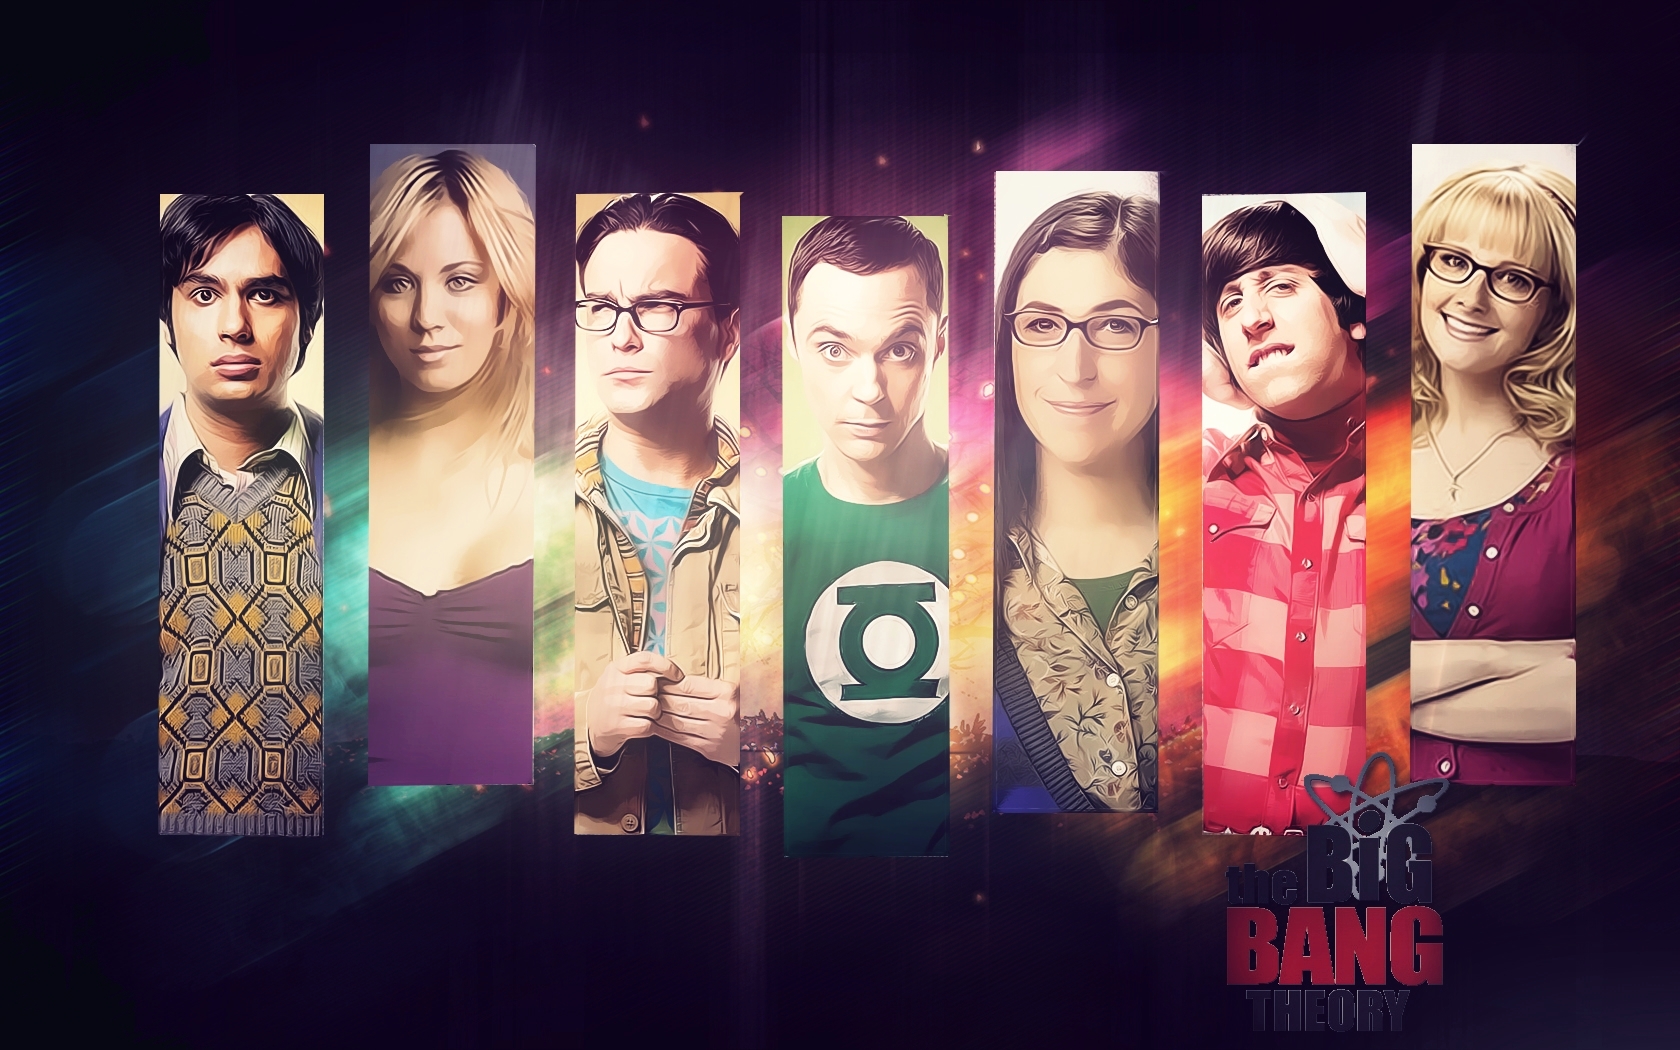 The Big Bang Theory Wallpaper Just Good Vibe